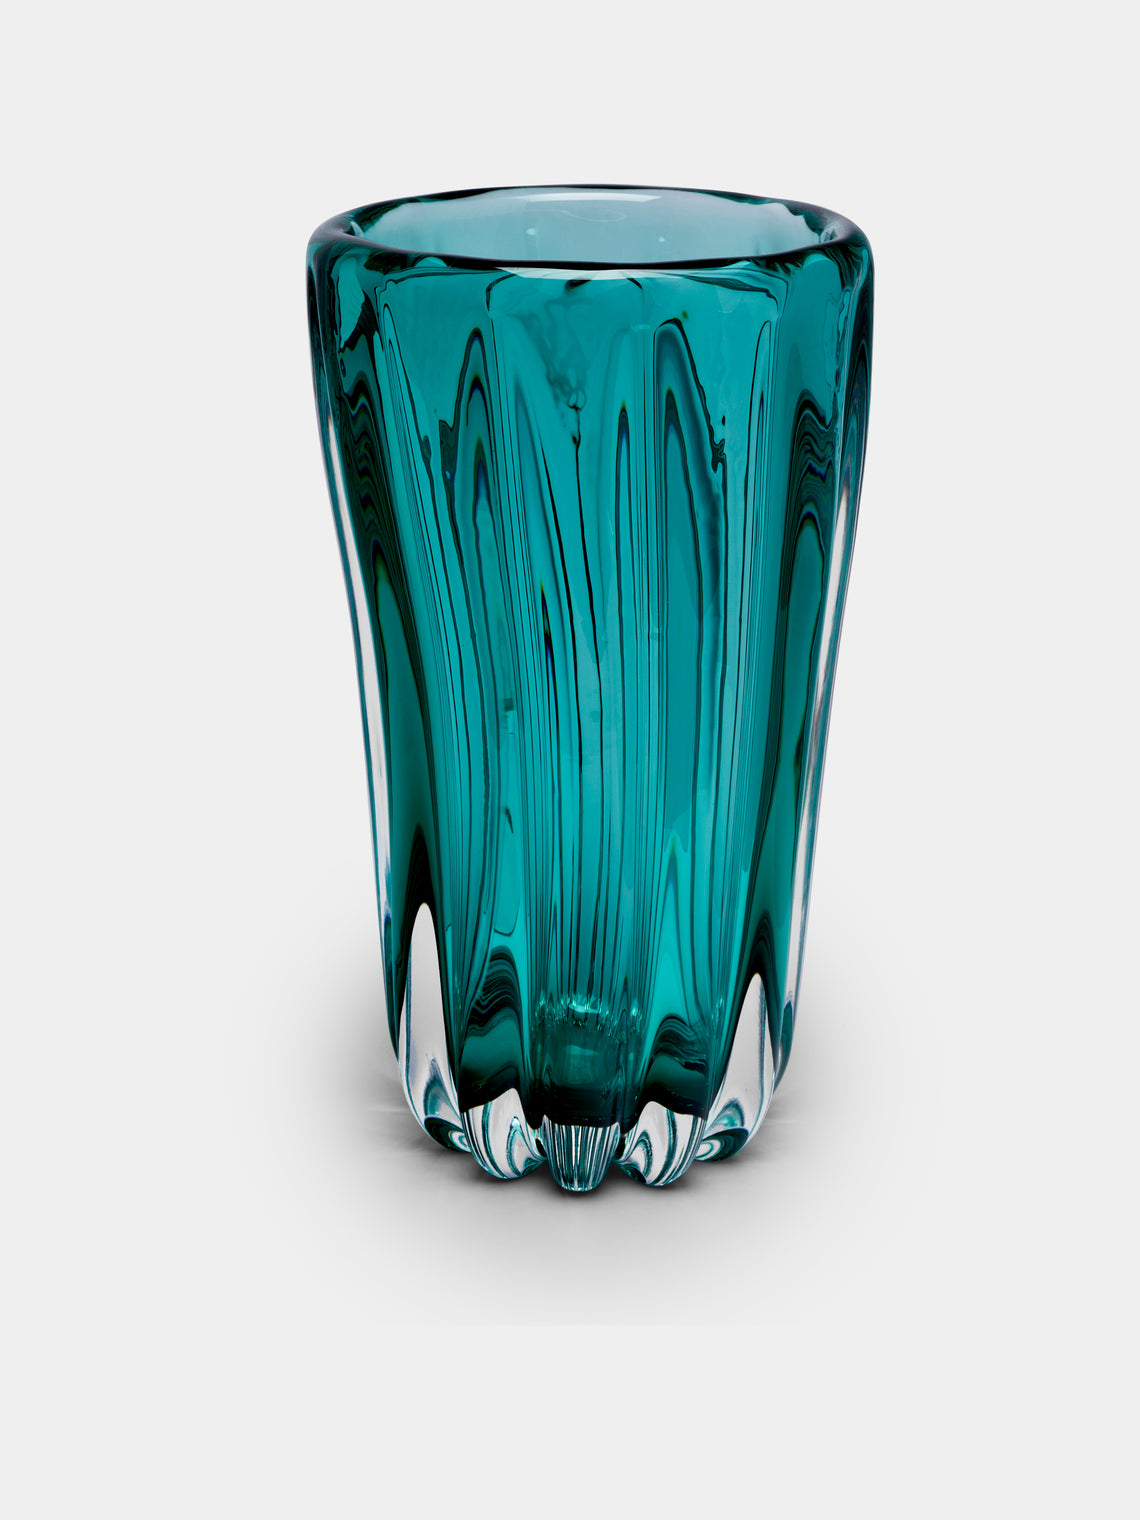 Yali Glass - Fiori Hand-Blown Murano Glass Large Vase - Green - ABASK - 